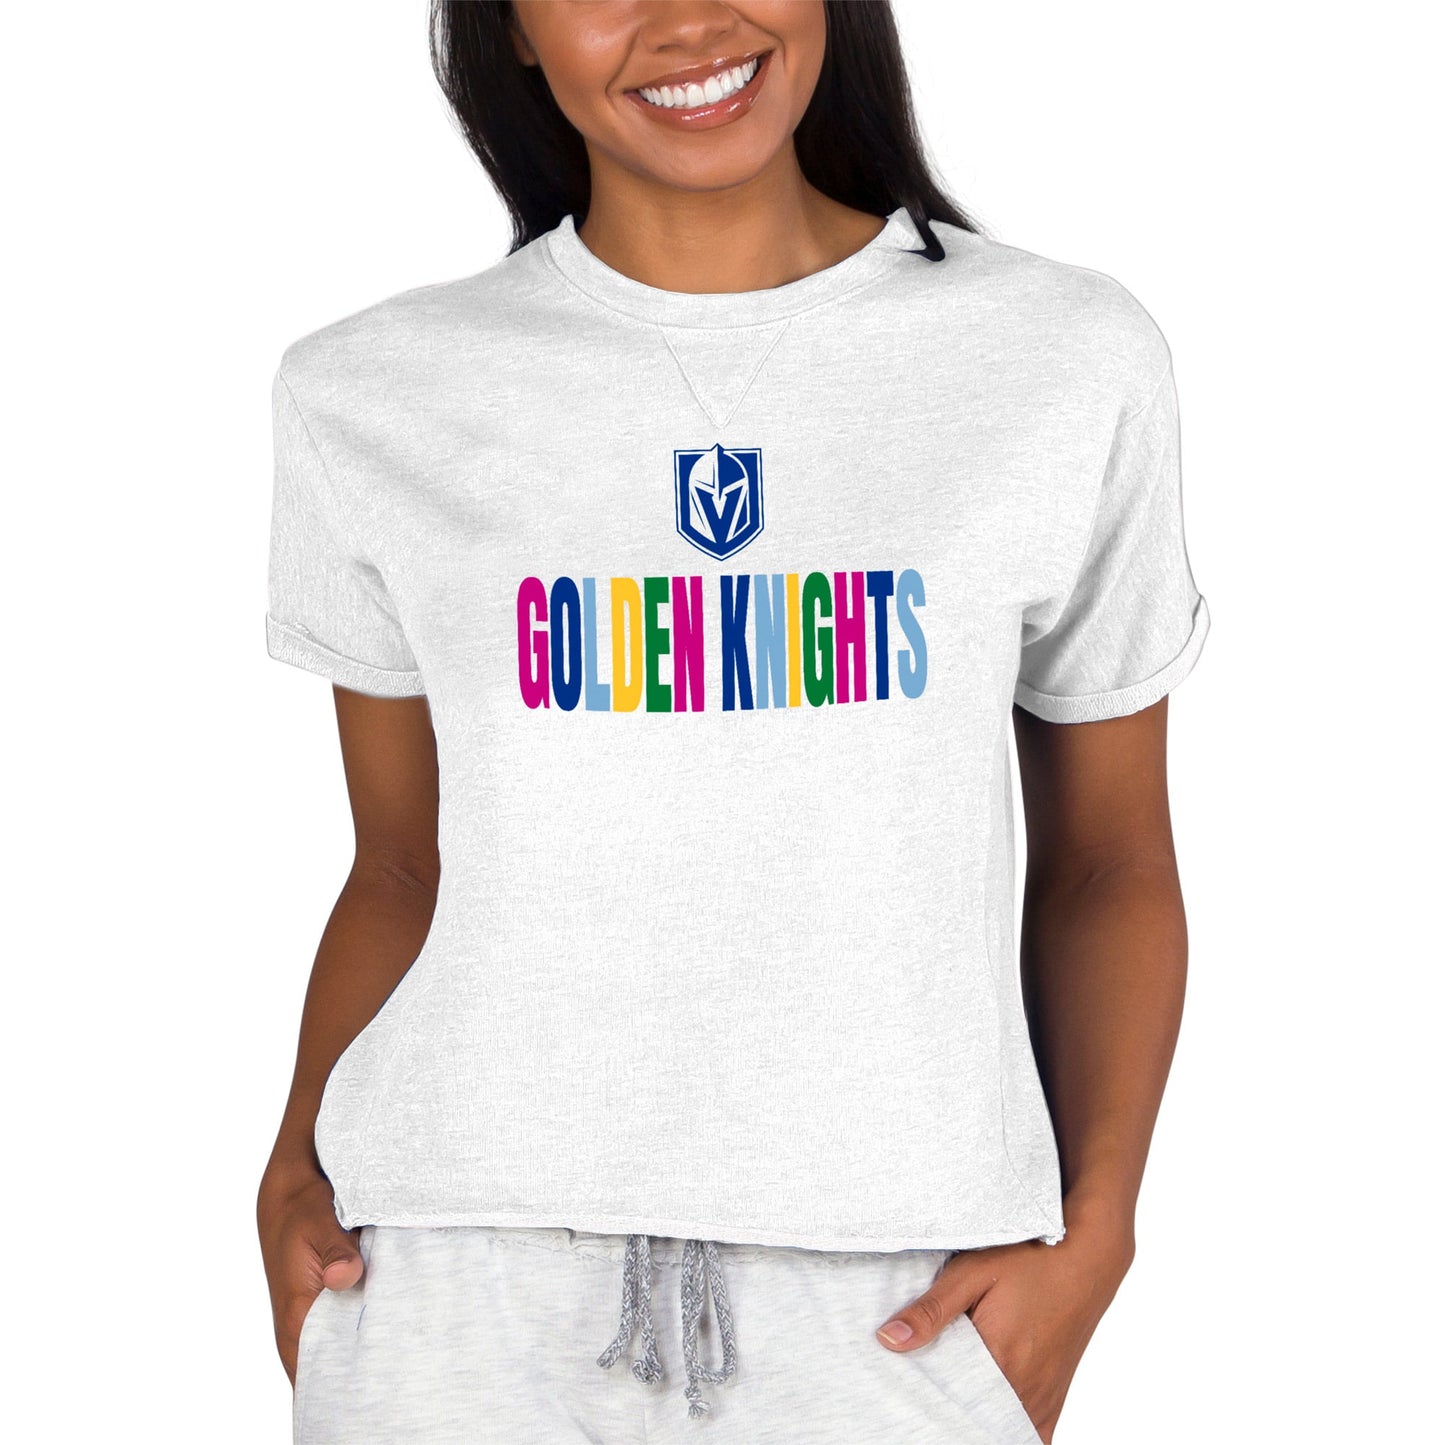 Women's Concepts Sport Oatmeal Vegas Golden Knights Tri-Blend Mainstream Terry Short Sleeve Sweatshirt Top